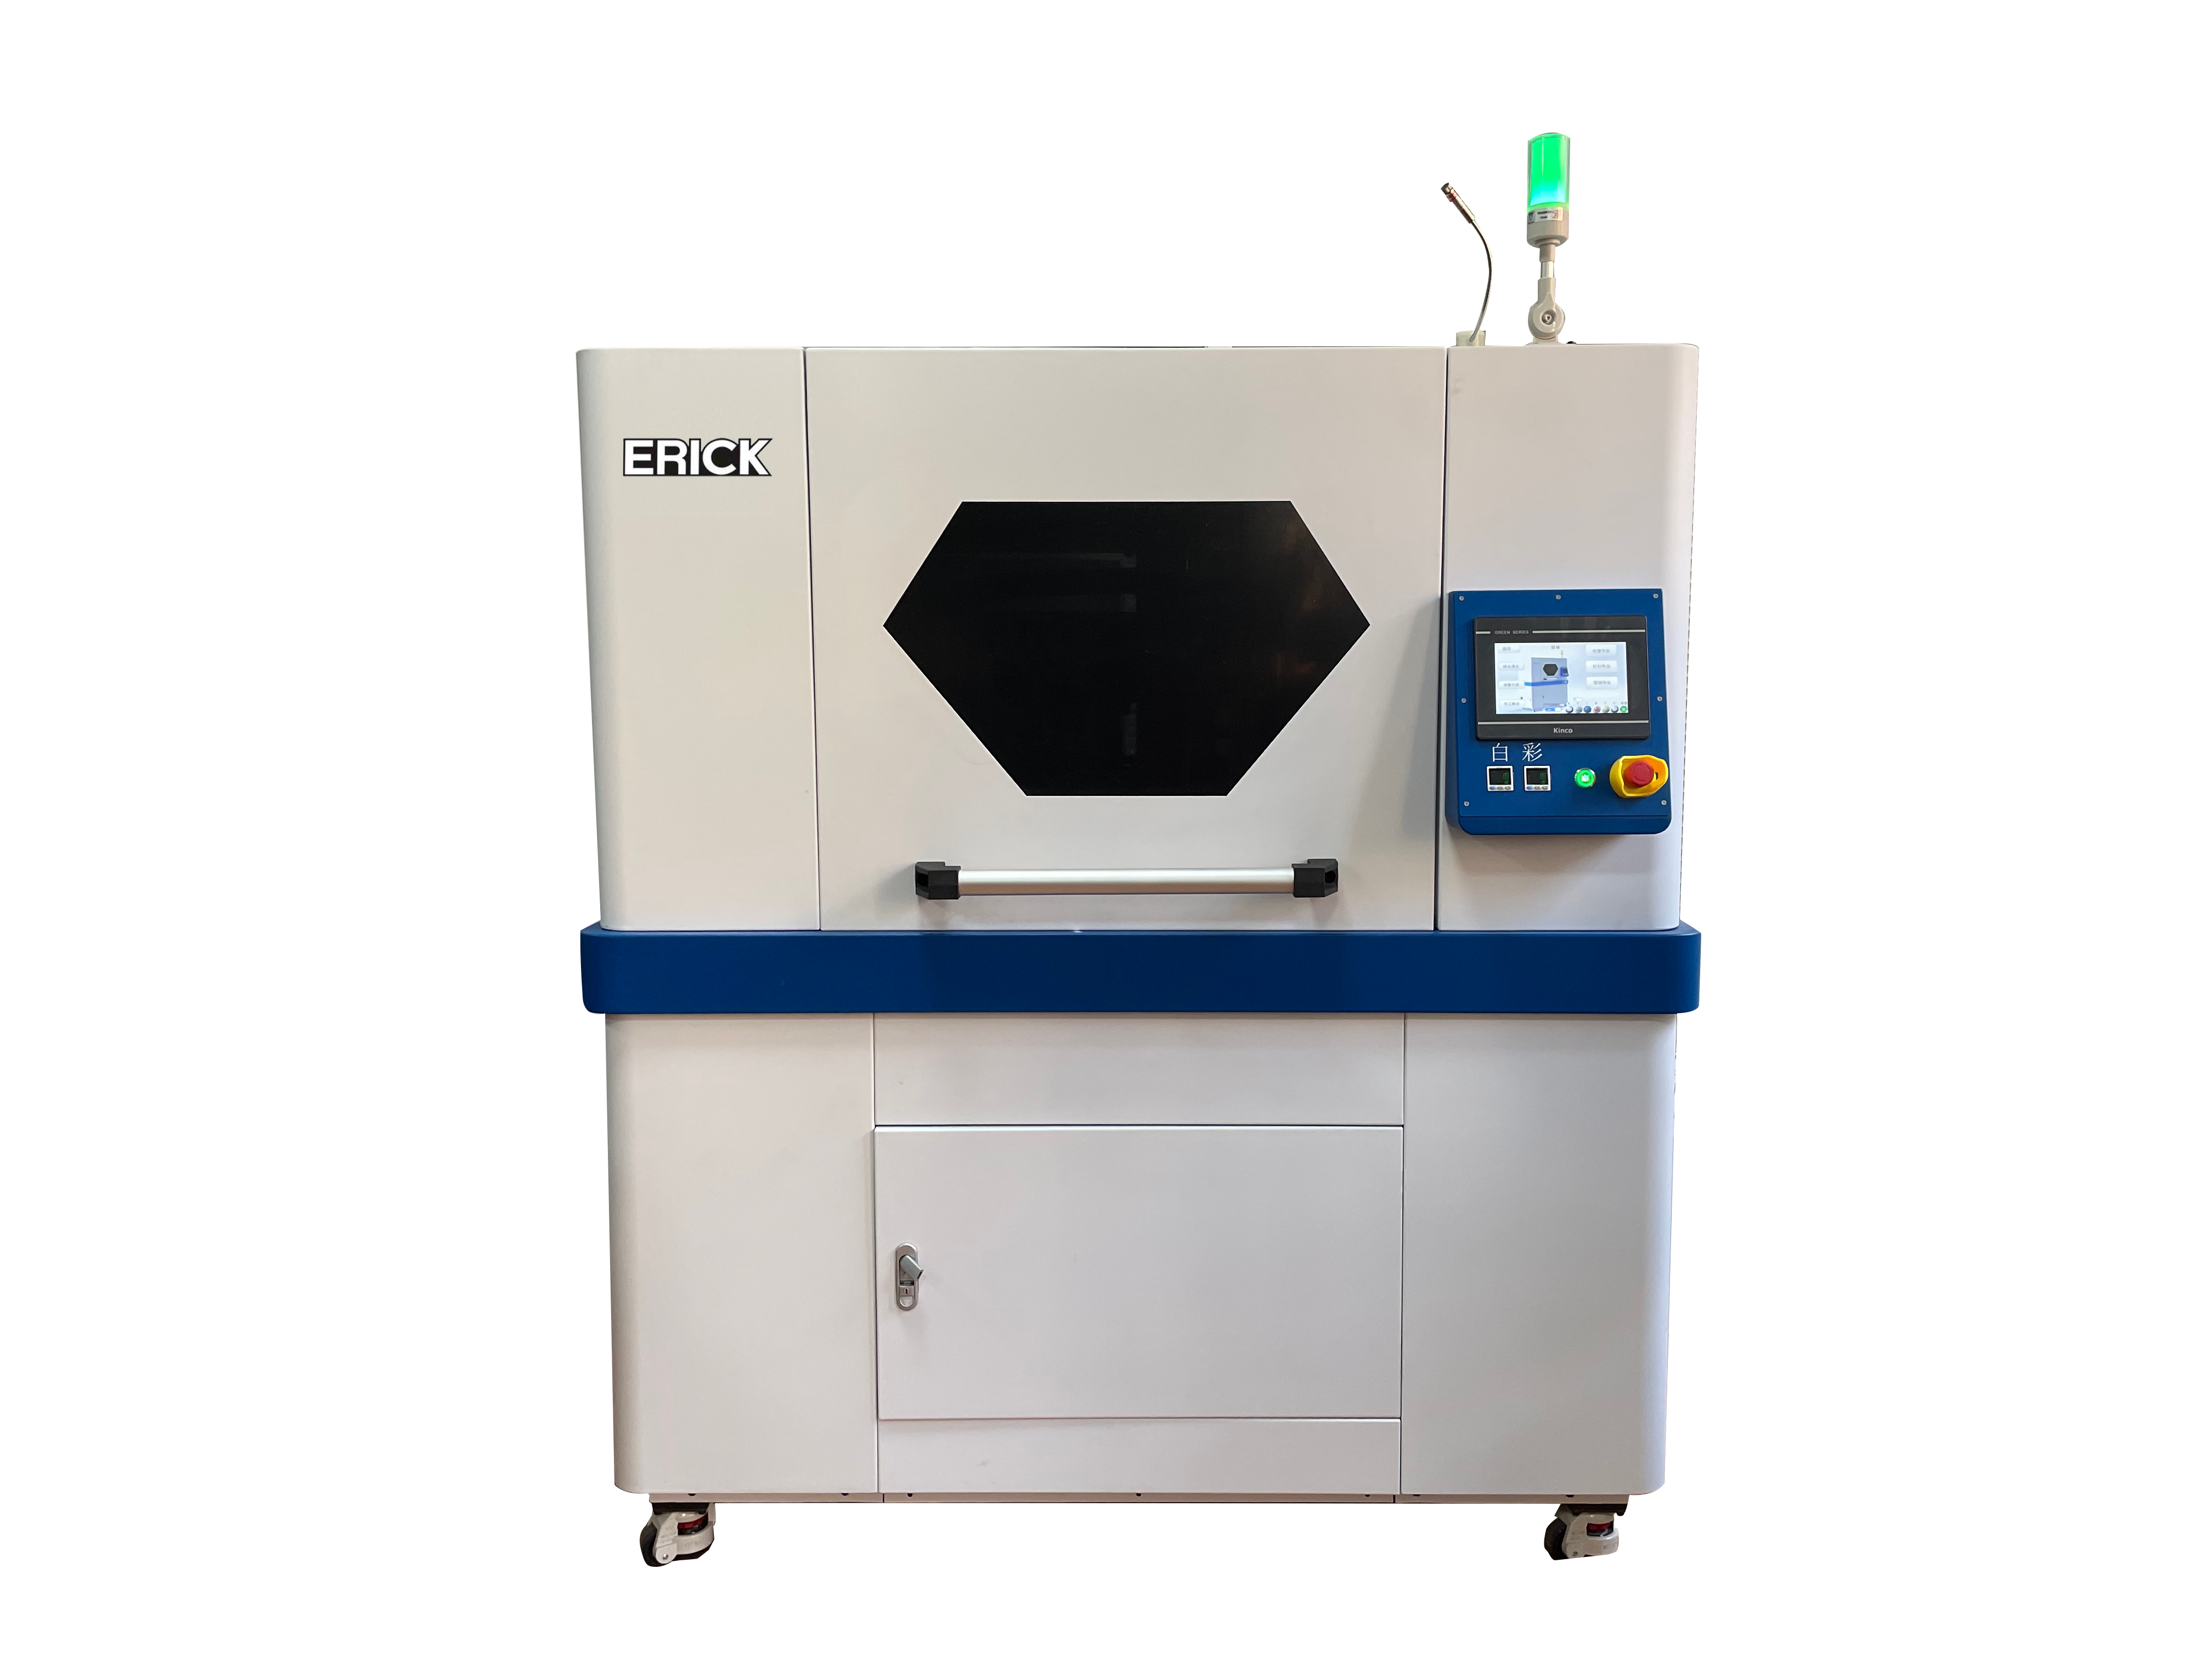 Zita reAily Group rinofanana neSuperior Digital Printing Equipment